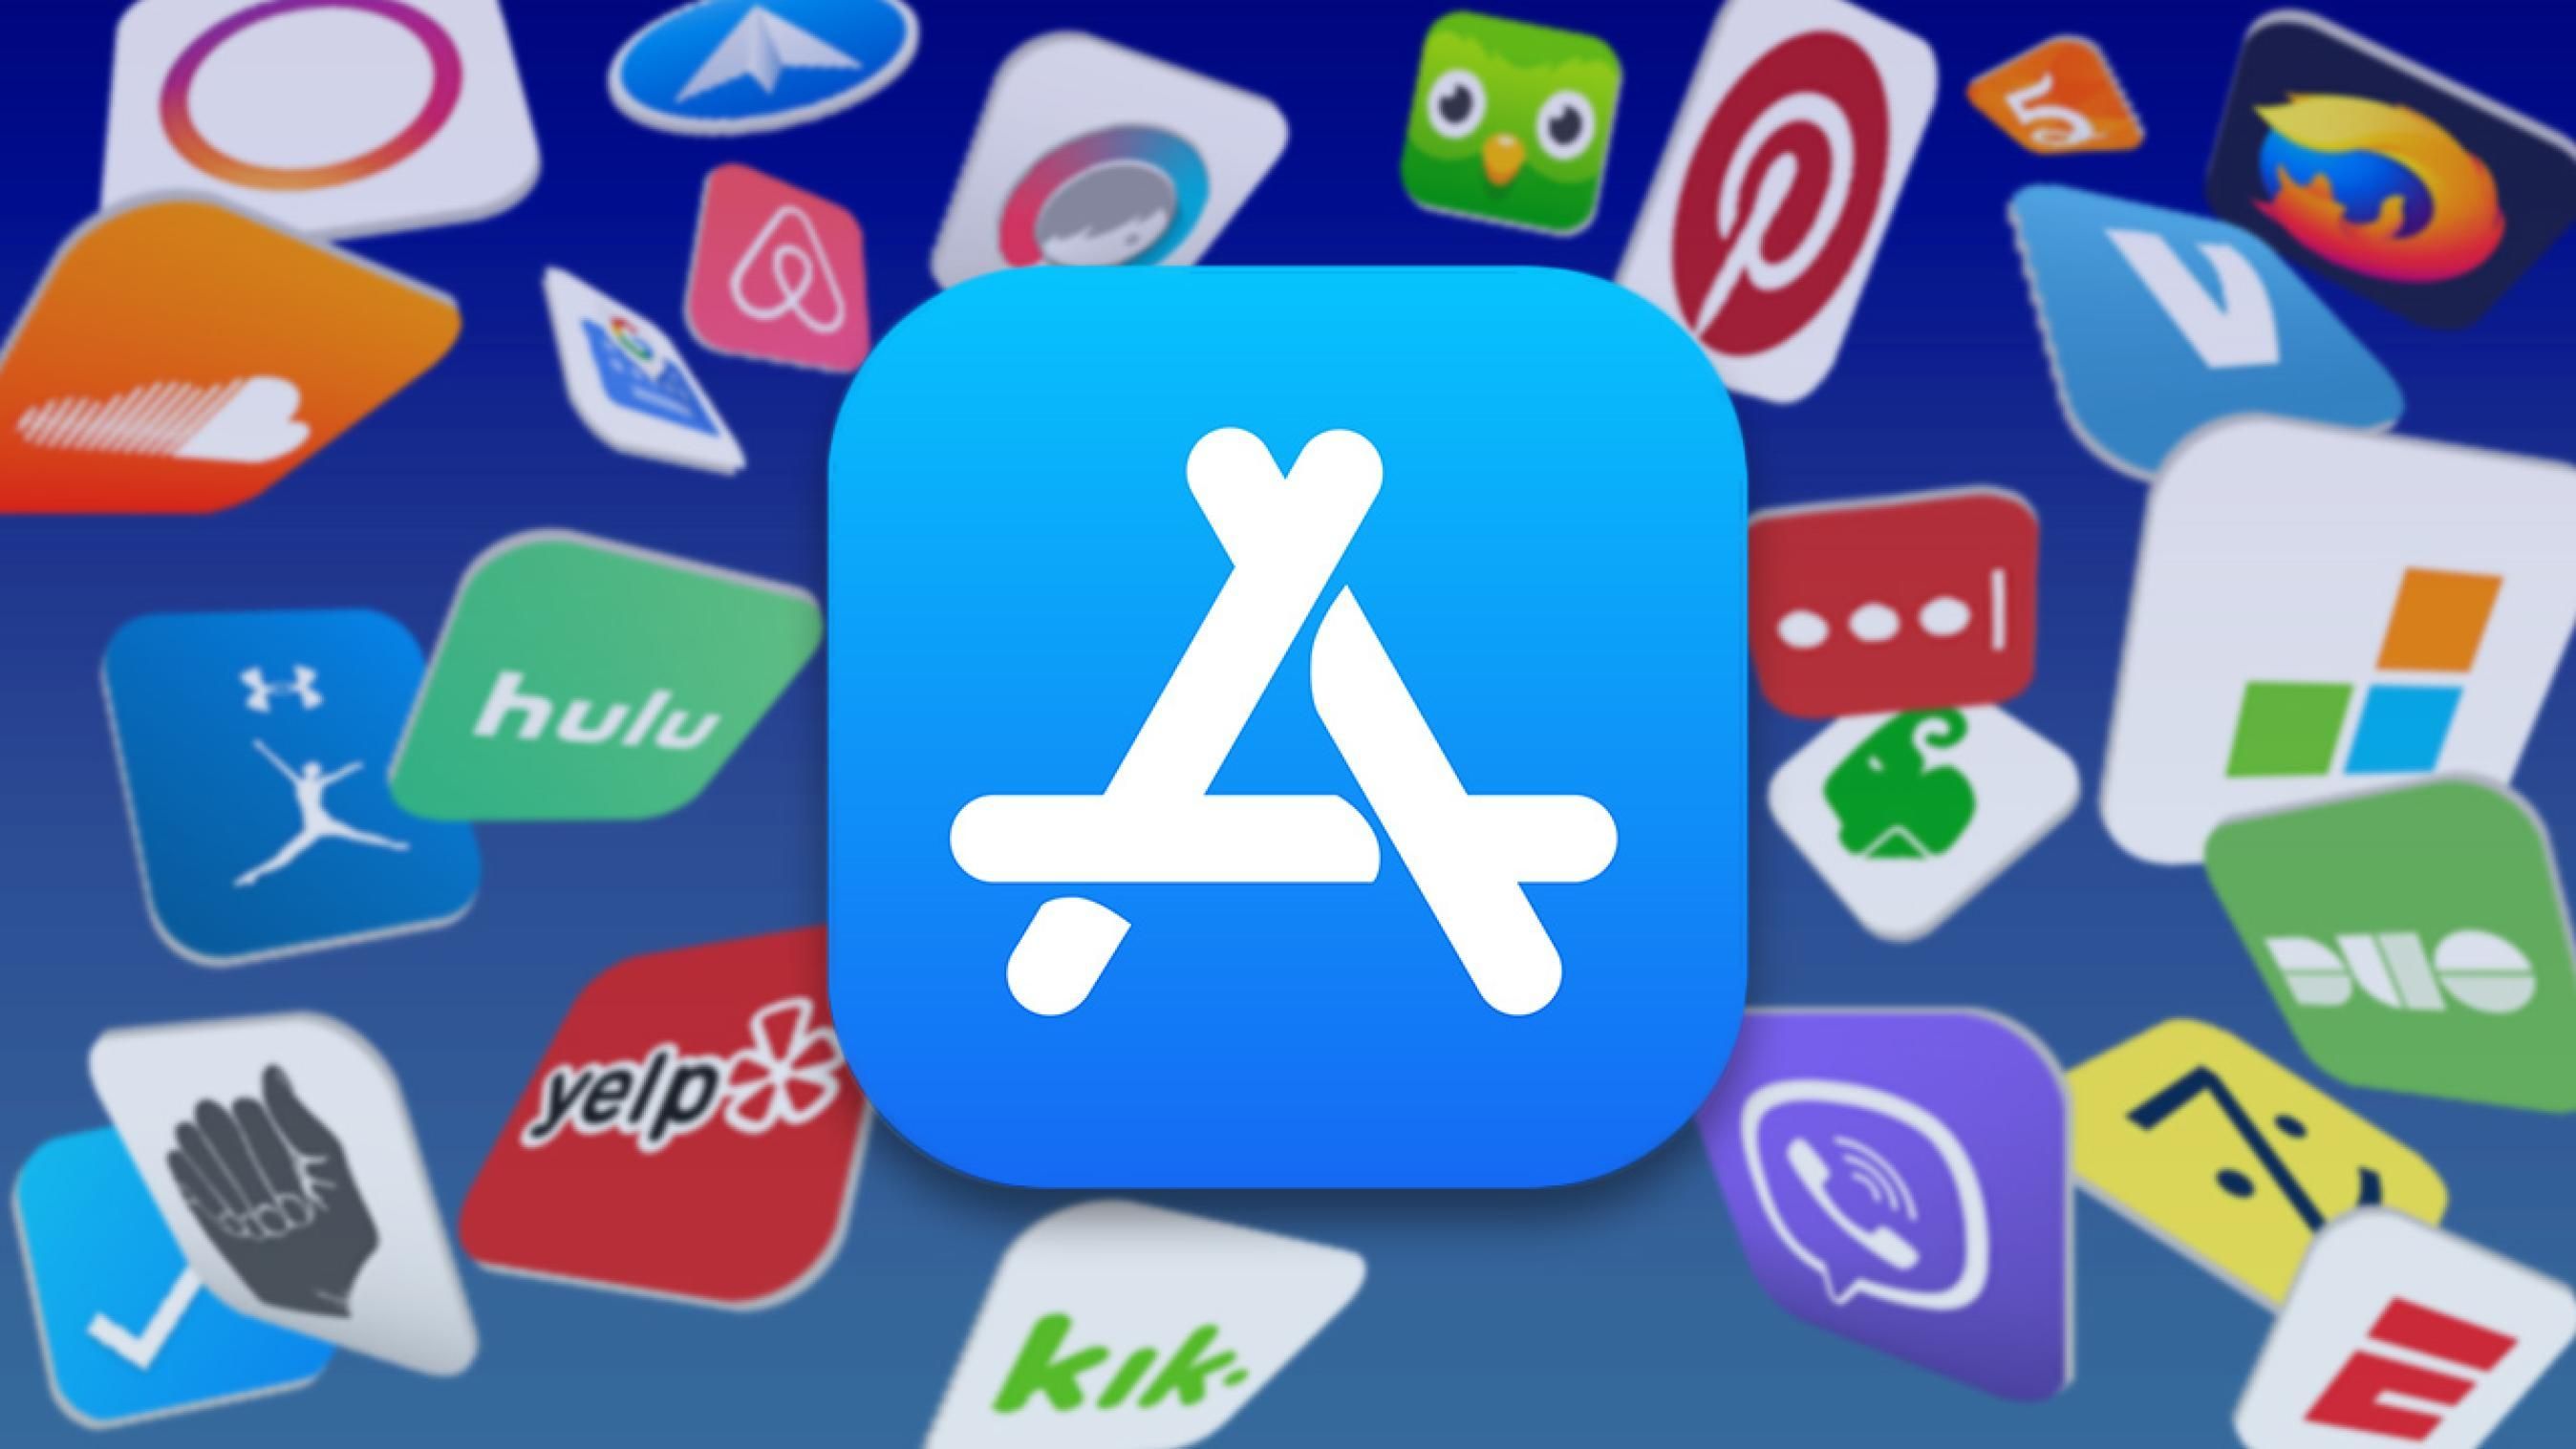 Логотип App Store